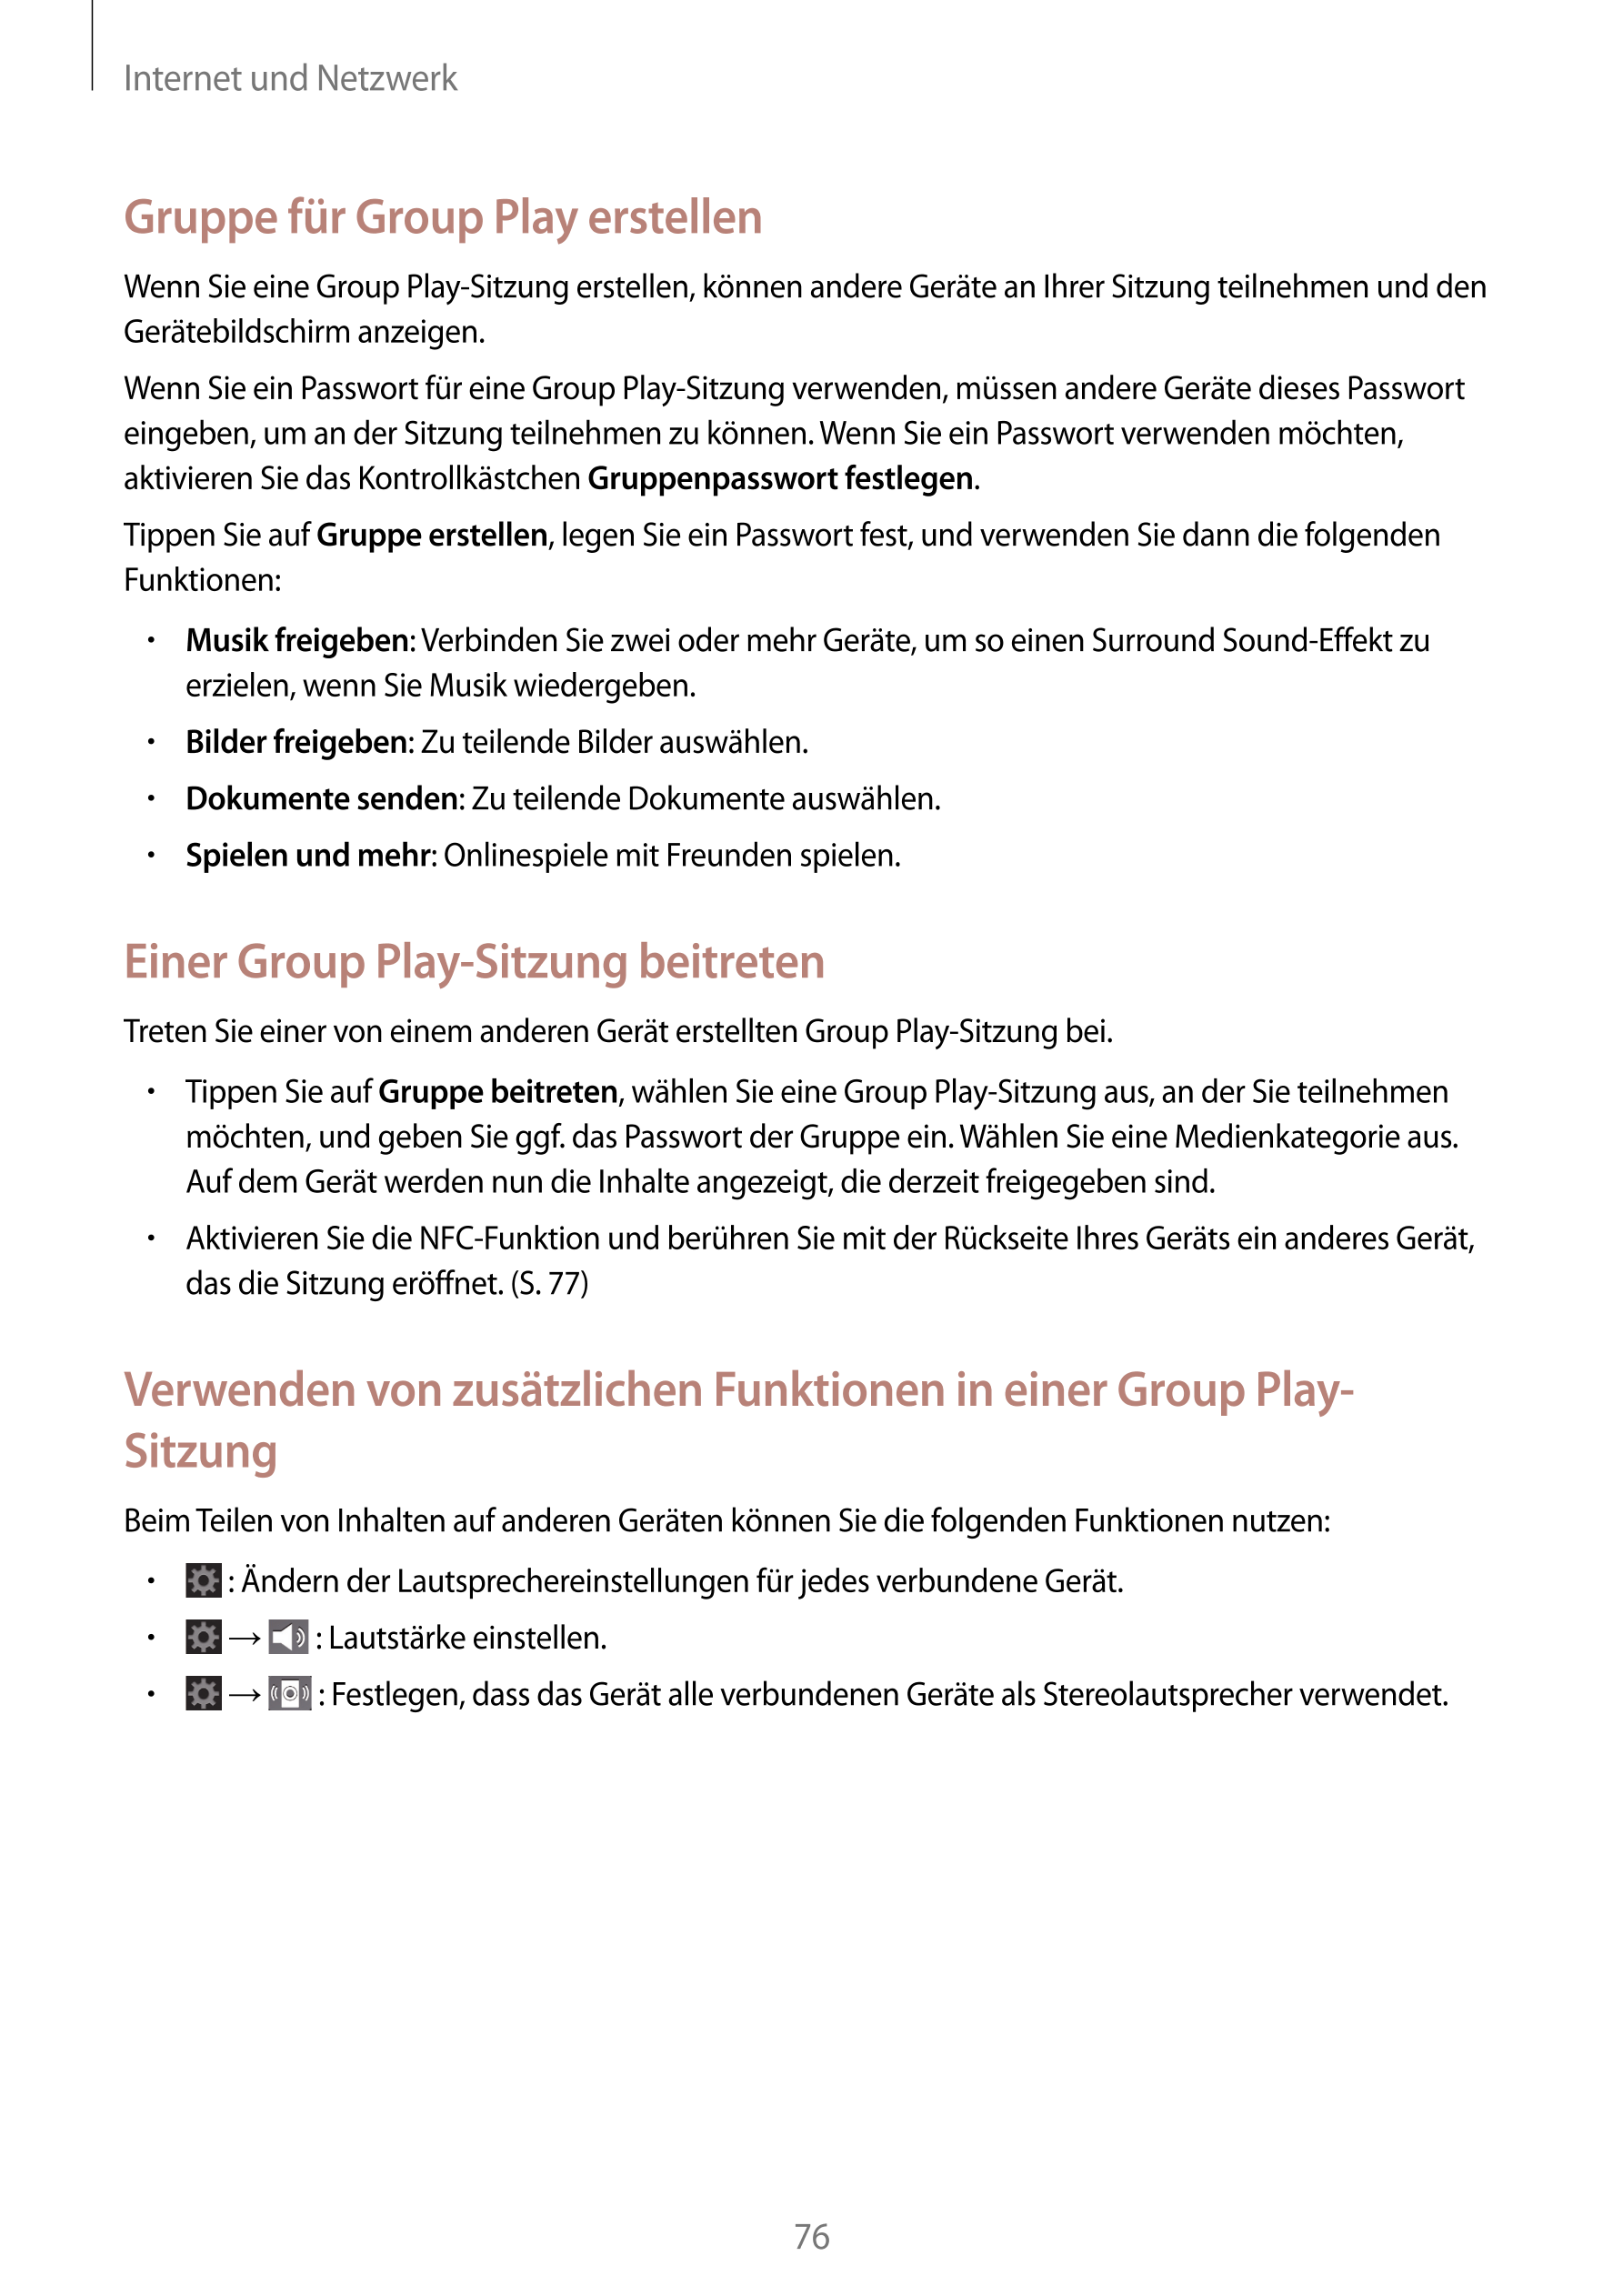 Internet und Netzwerk
Gruppe für Group Play erstellen
Wenn Sie eine Group Play-Sitzung erstellen, können andere Geräte an Ihrer 